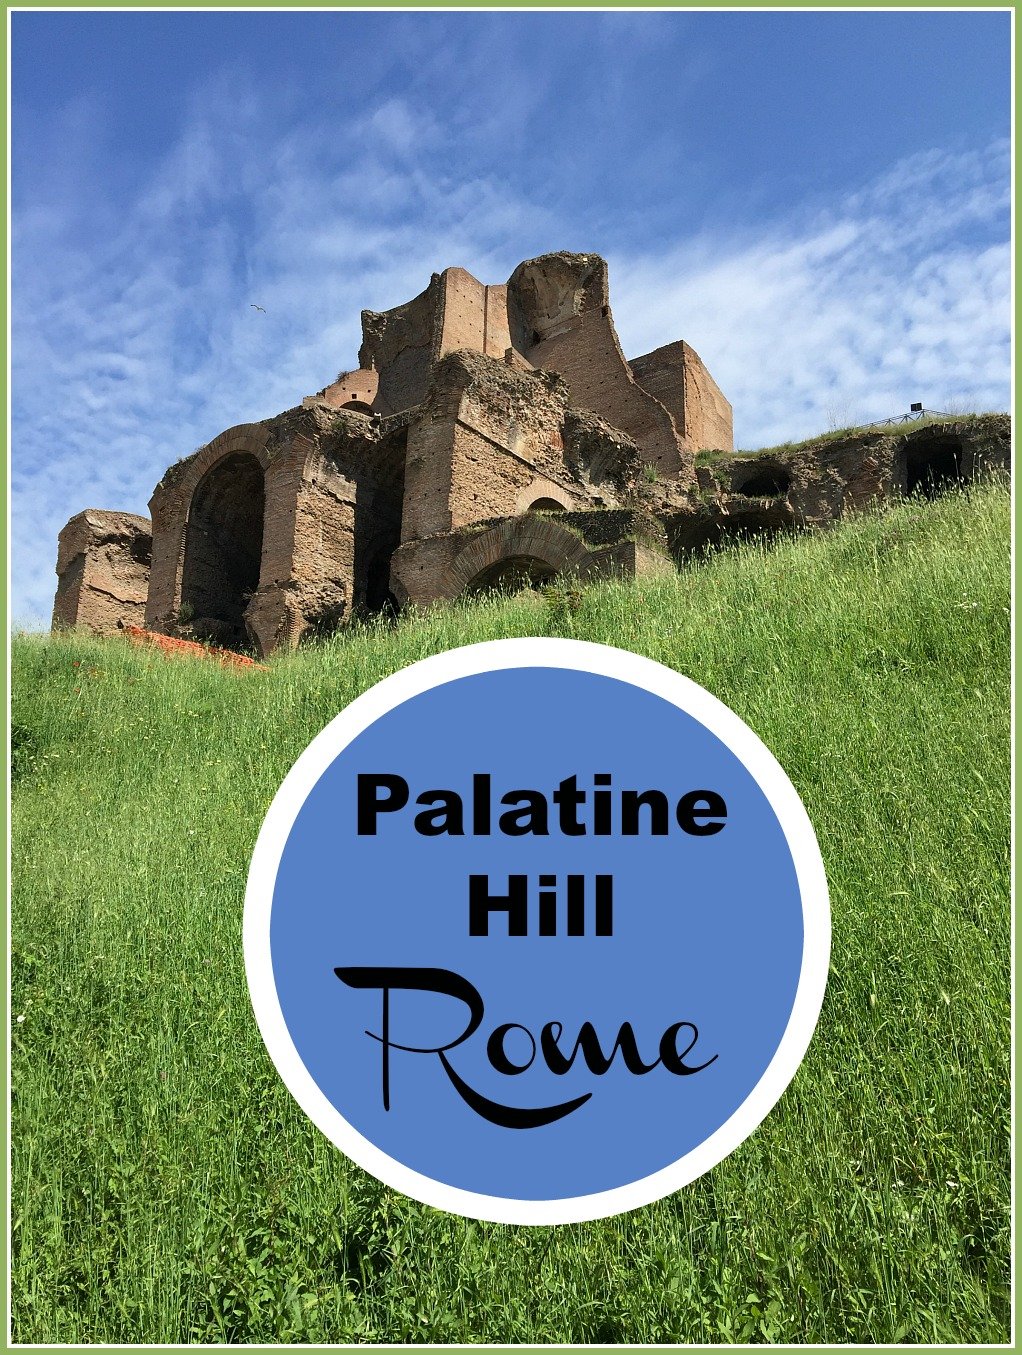 Palatine Hill Rome